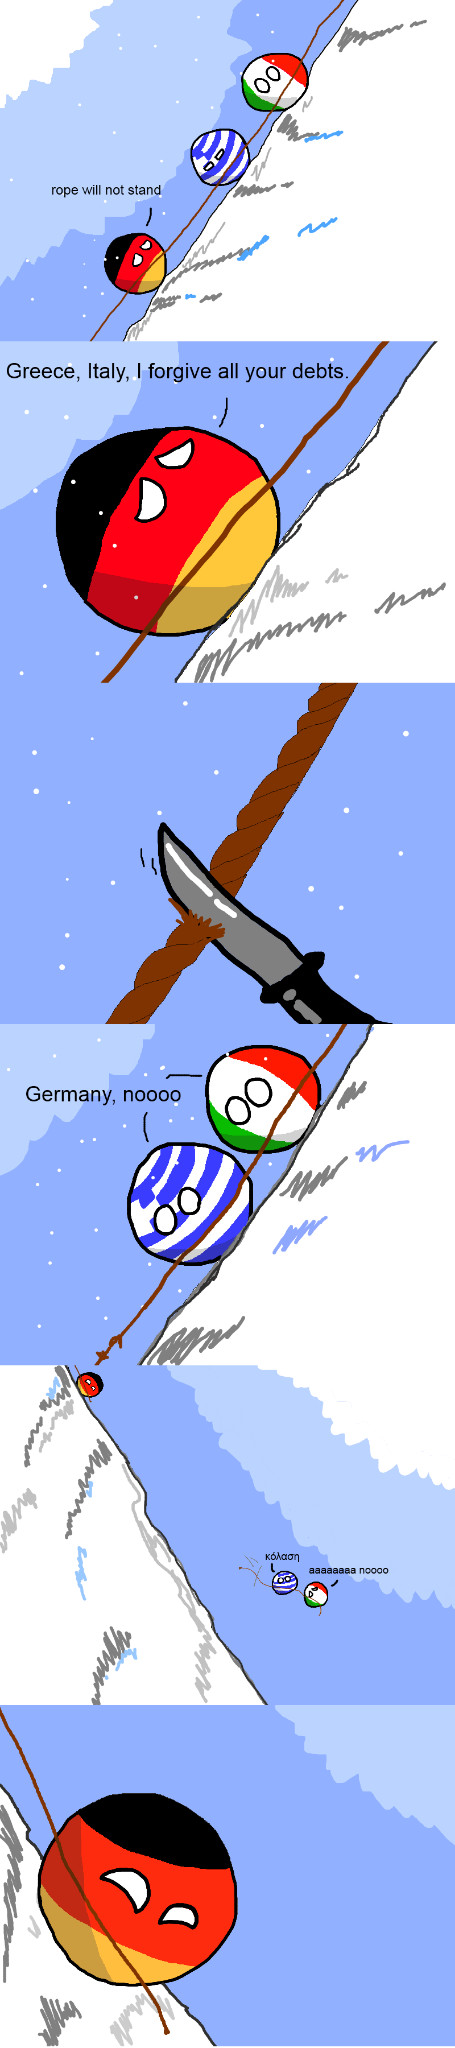 Germany's heart of gold - meme